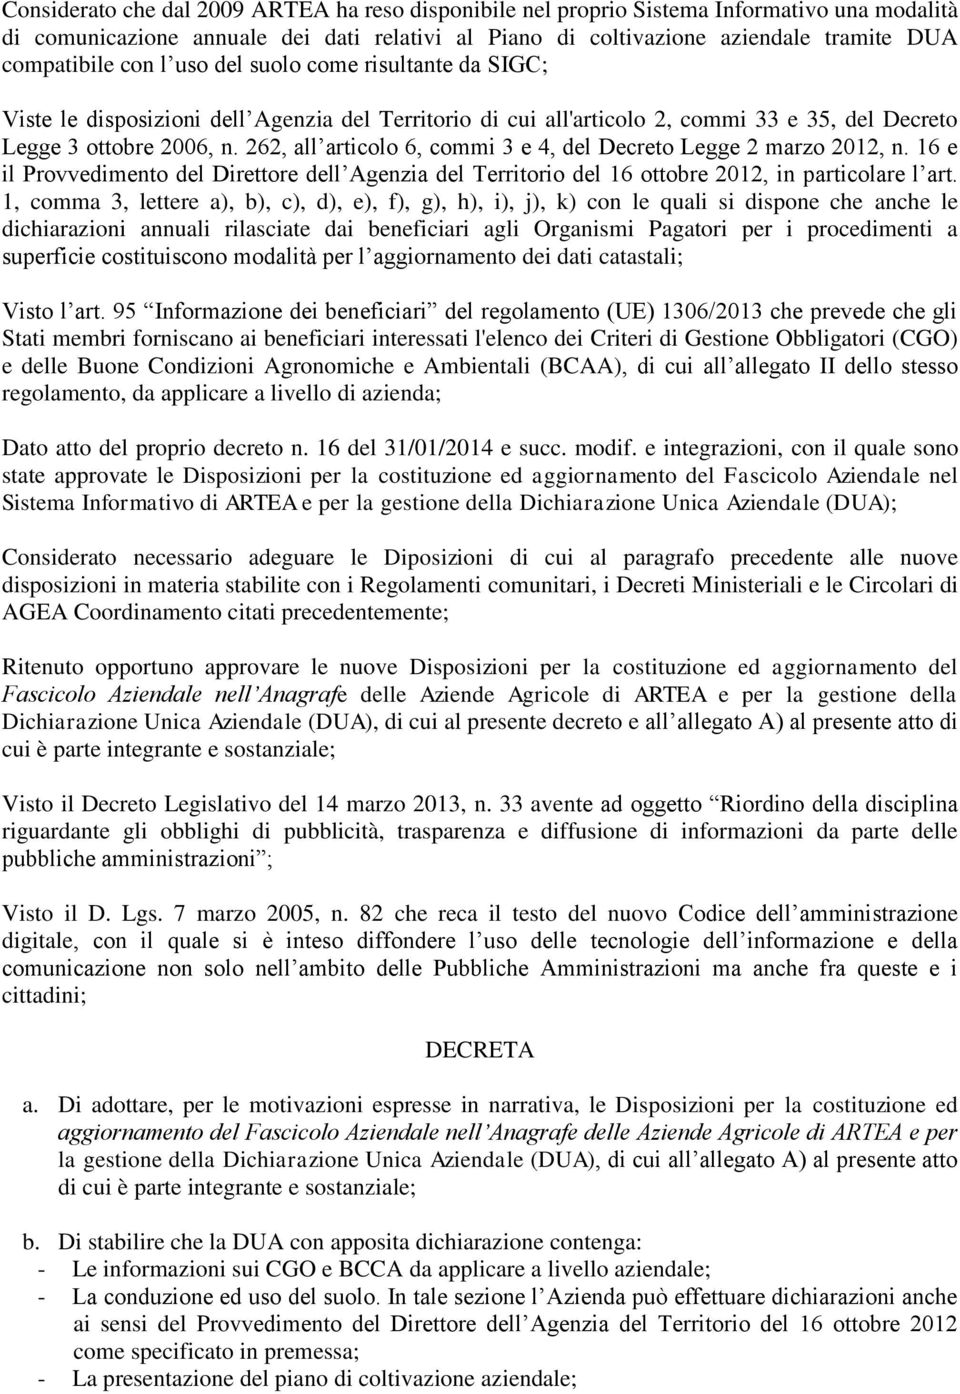 262, all articolo 6, commi 3 e 4, del Decreto Legge 2 marzo 2012, n. 16 e il Provvedimento del Direttore dell Agenzia del Territorio del 16 ottobre 2012, in particolare l art.